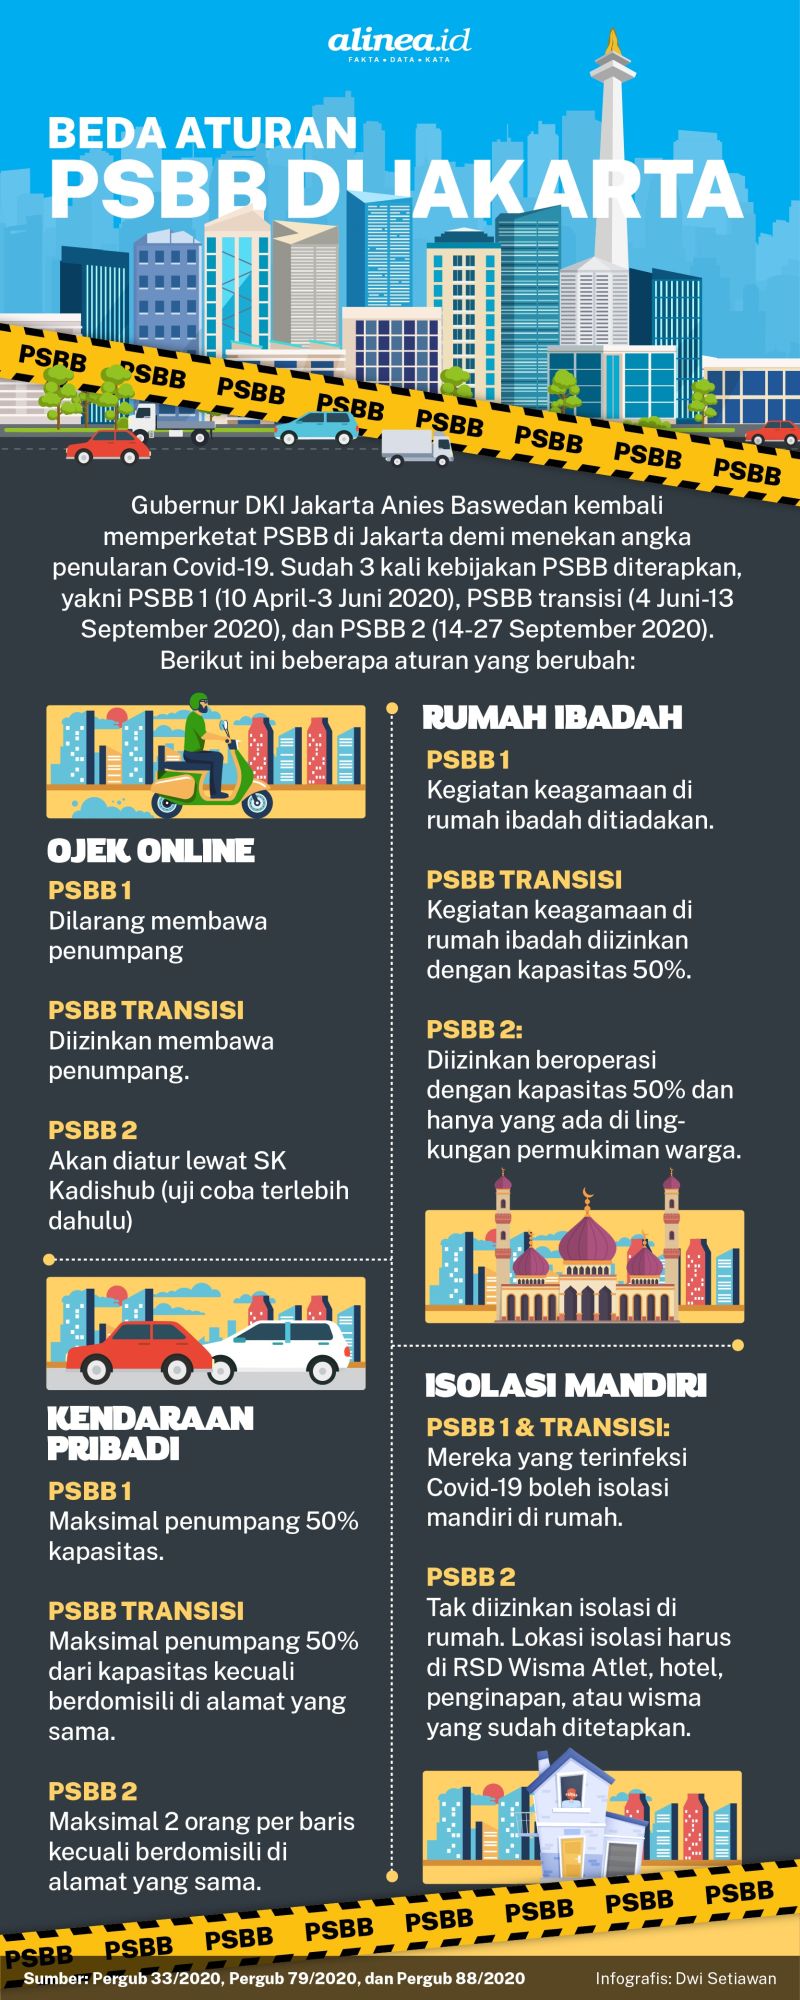 Infografik aturan PSBB Jakarta. Alinea.id/Dwi Setiawan.